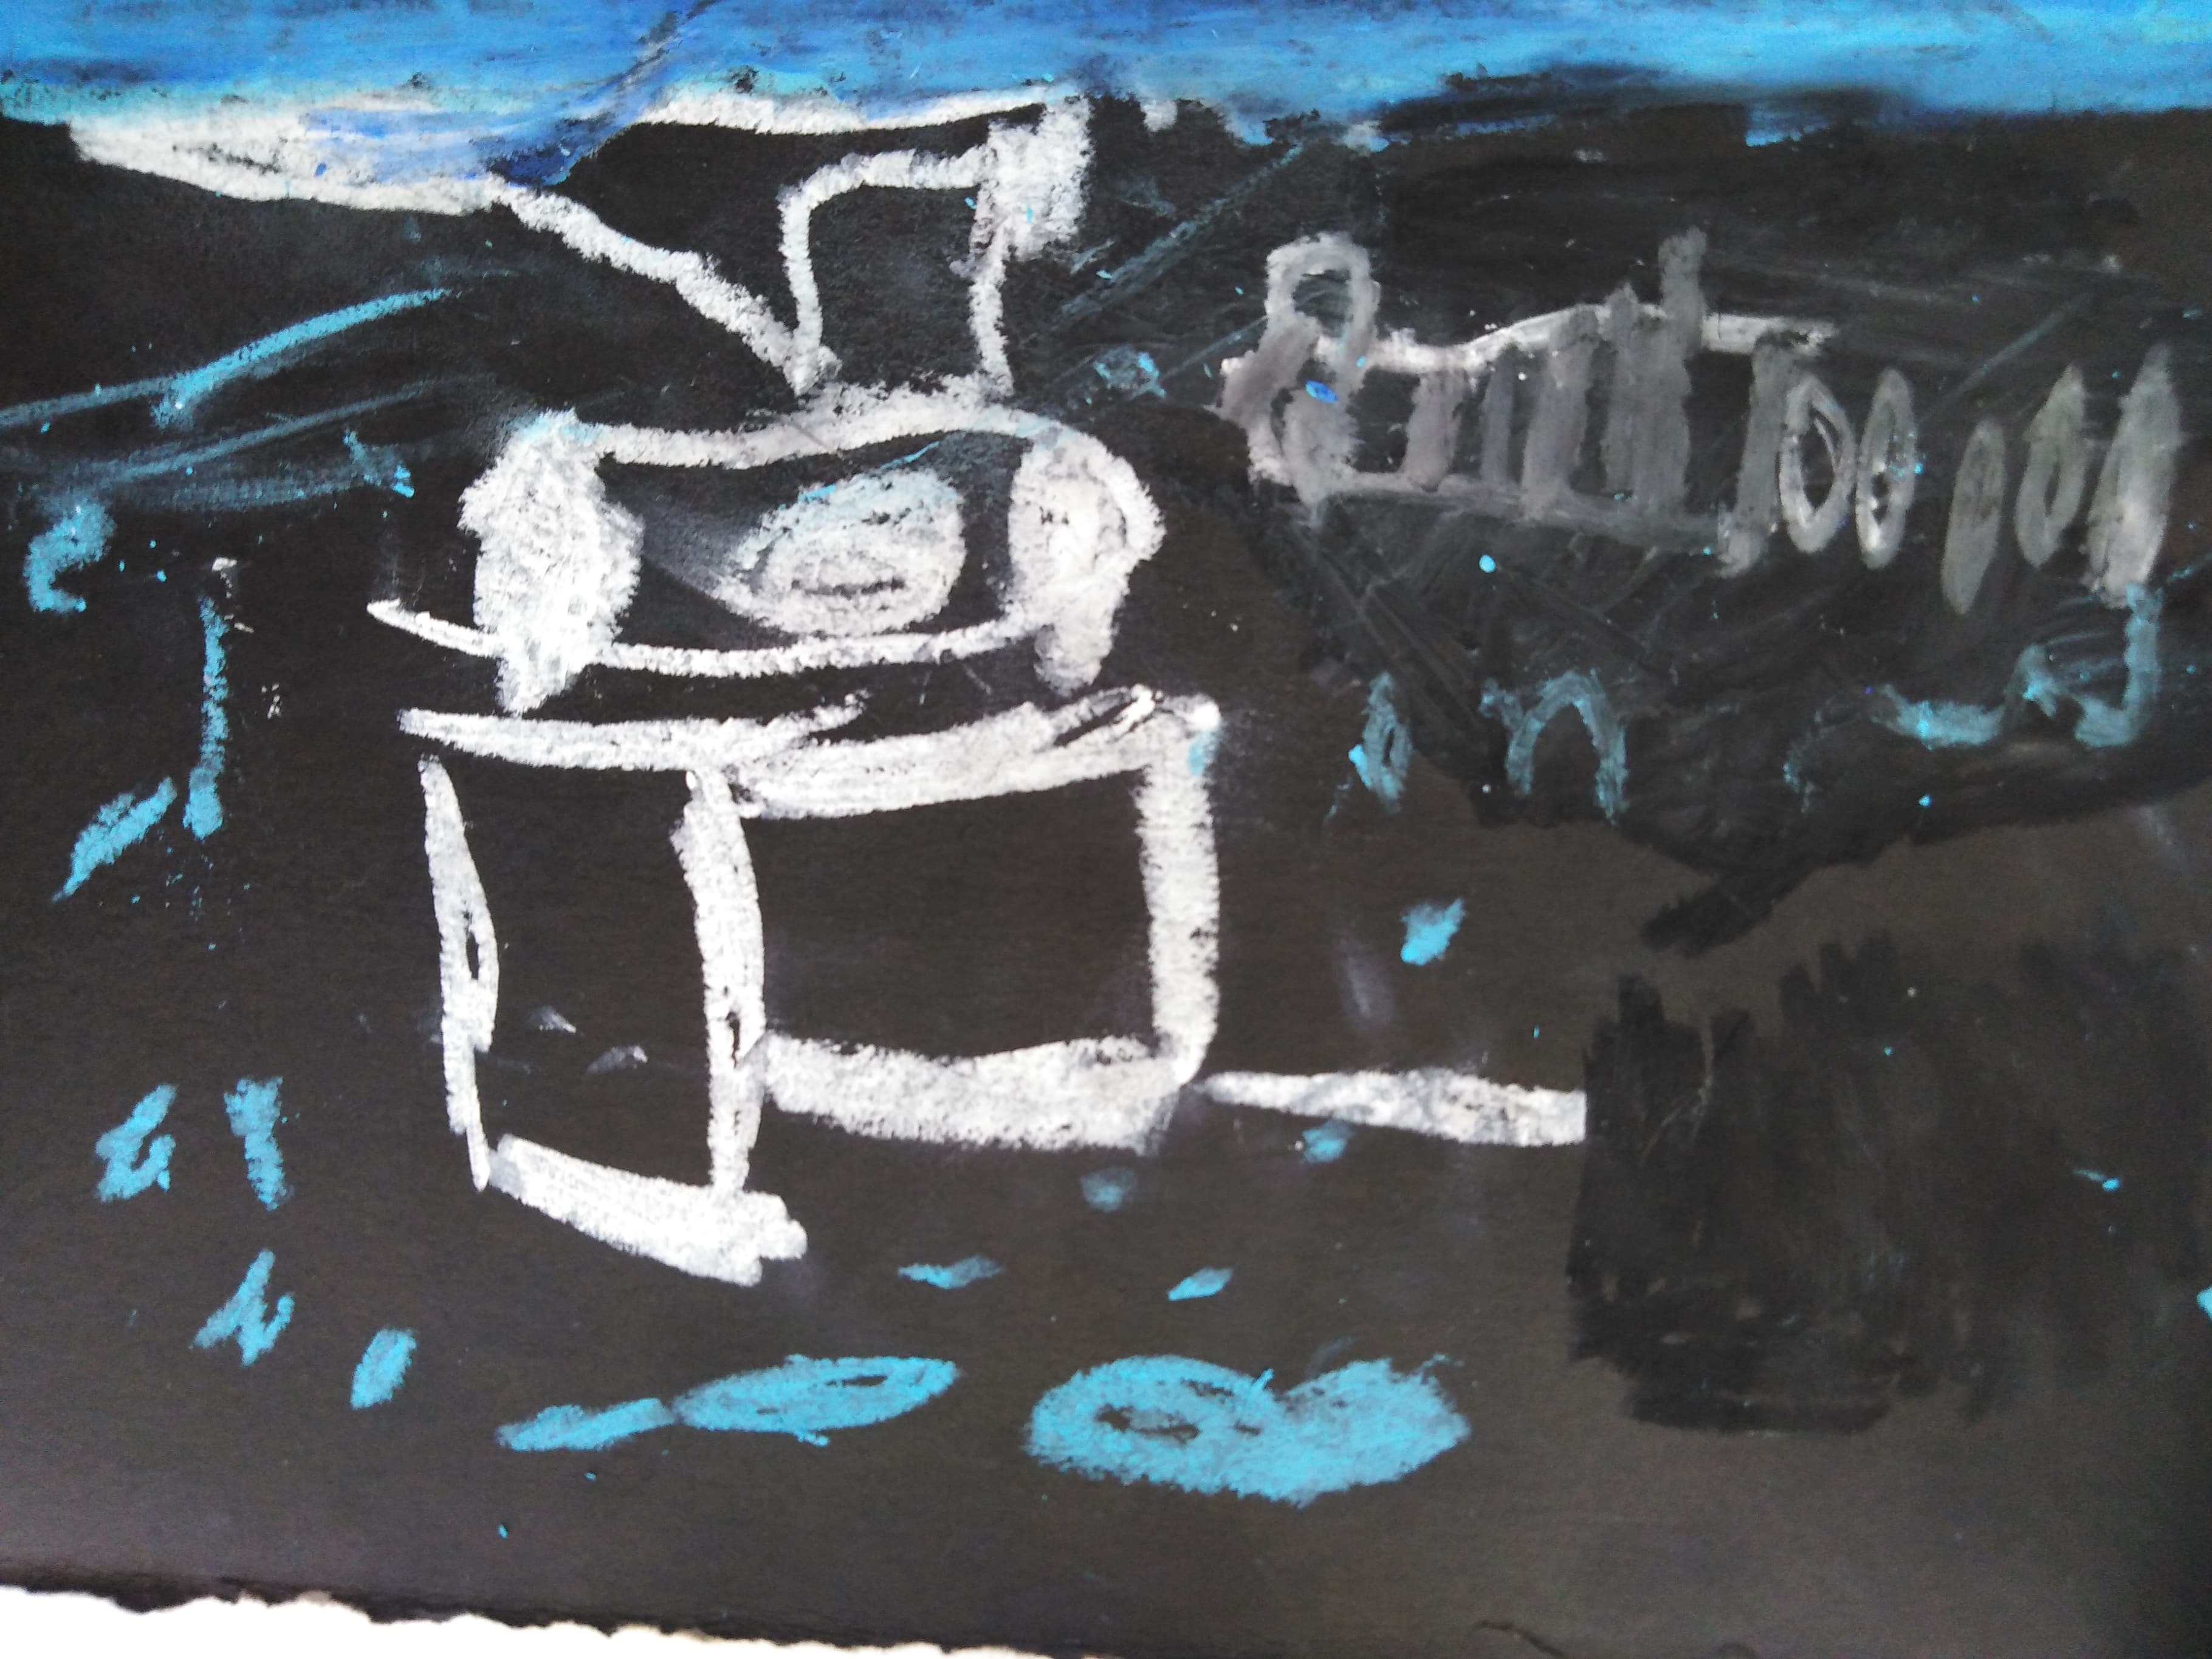 Η επέτειος του ΟΧΙ μέσα από τη Guernika του Picasso.